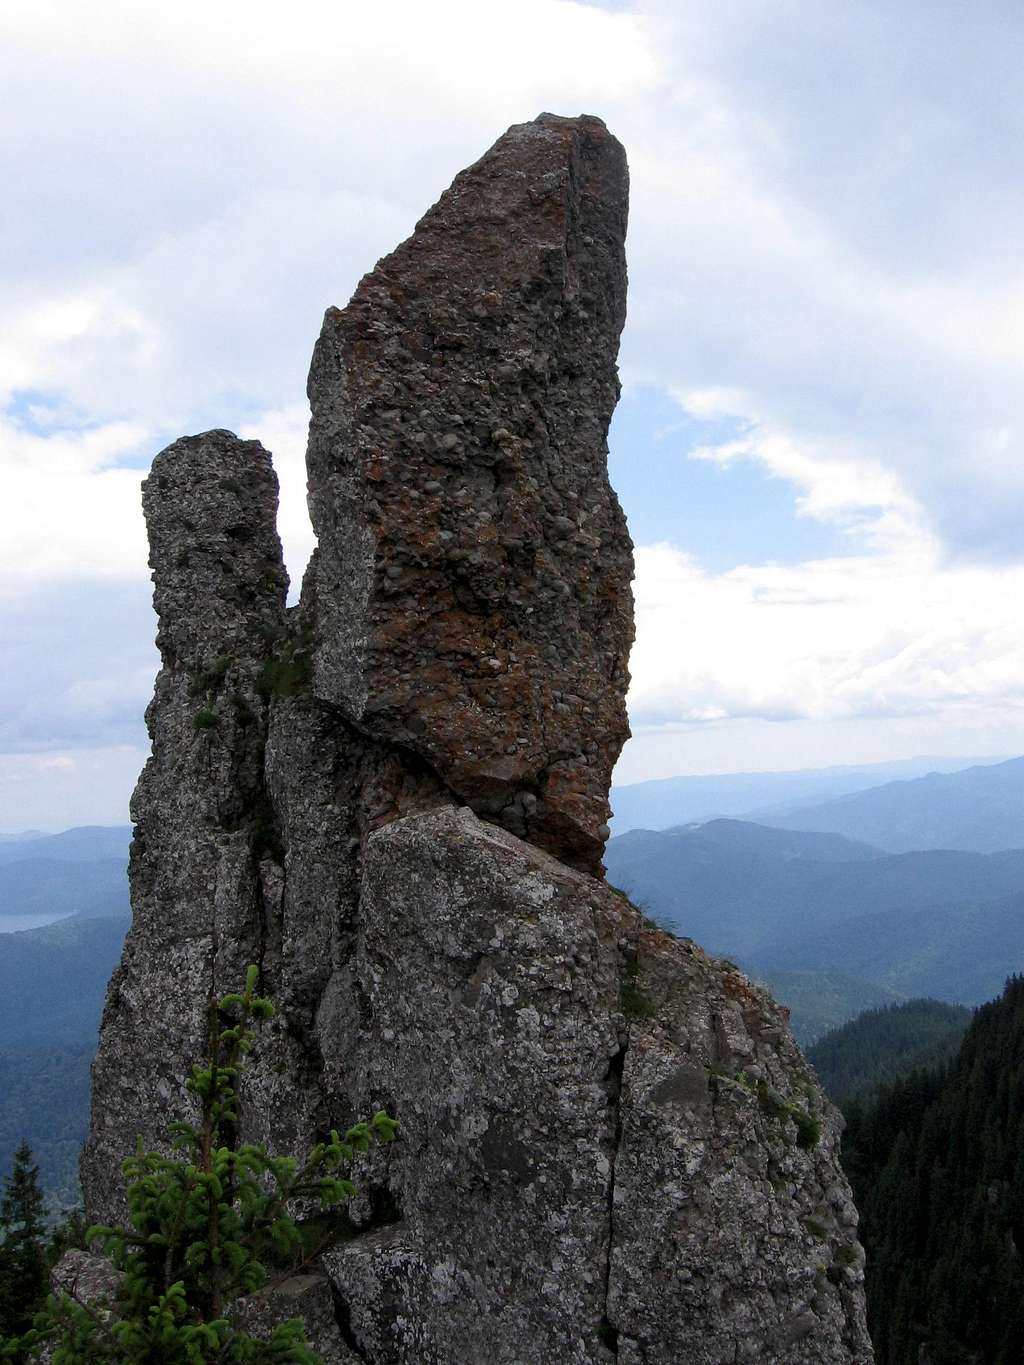 Cuşma Dorobanţului - Ceahlău mountains